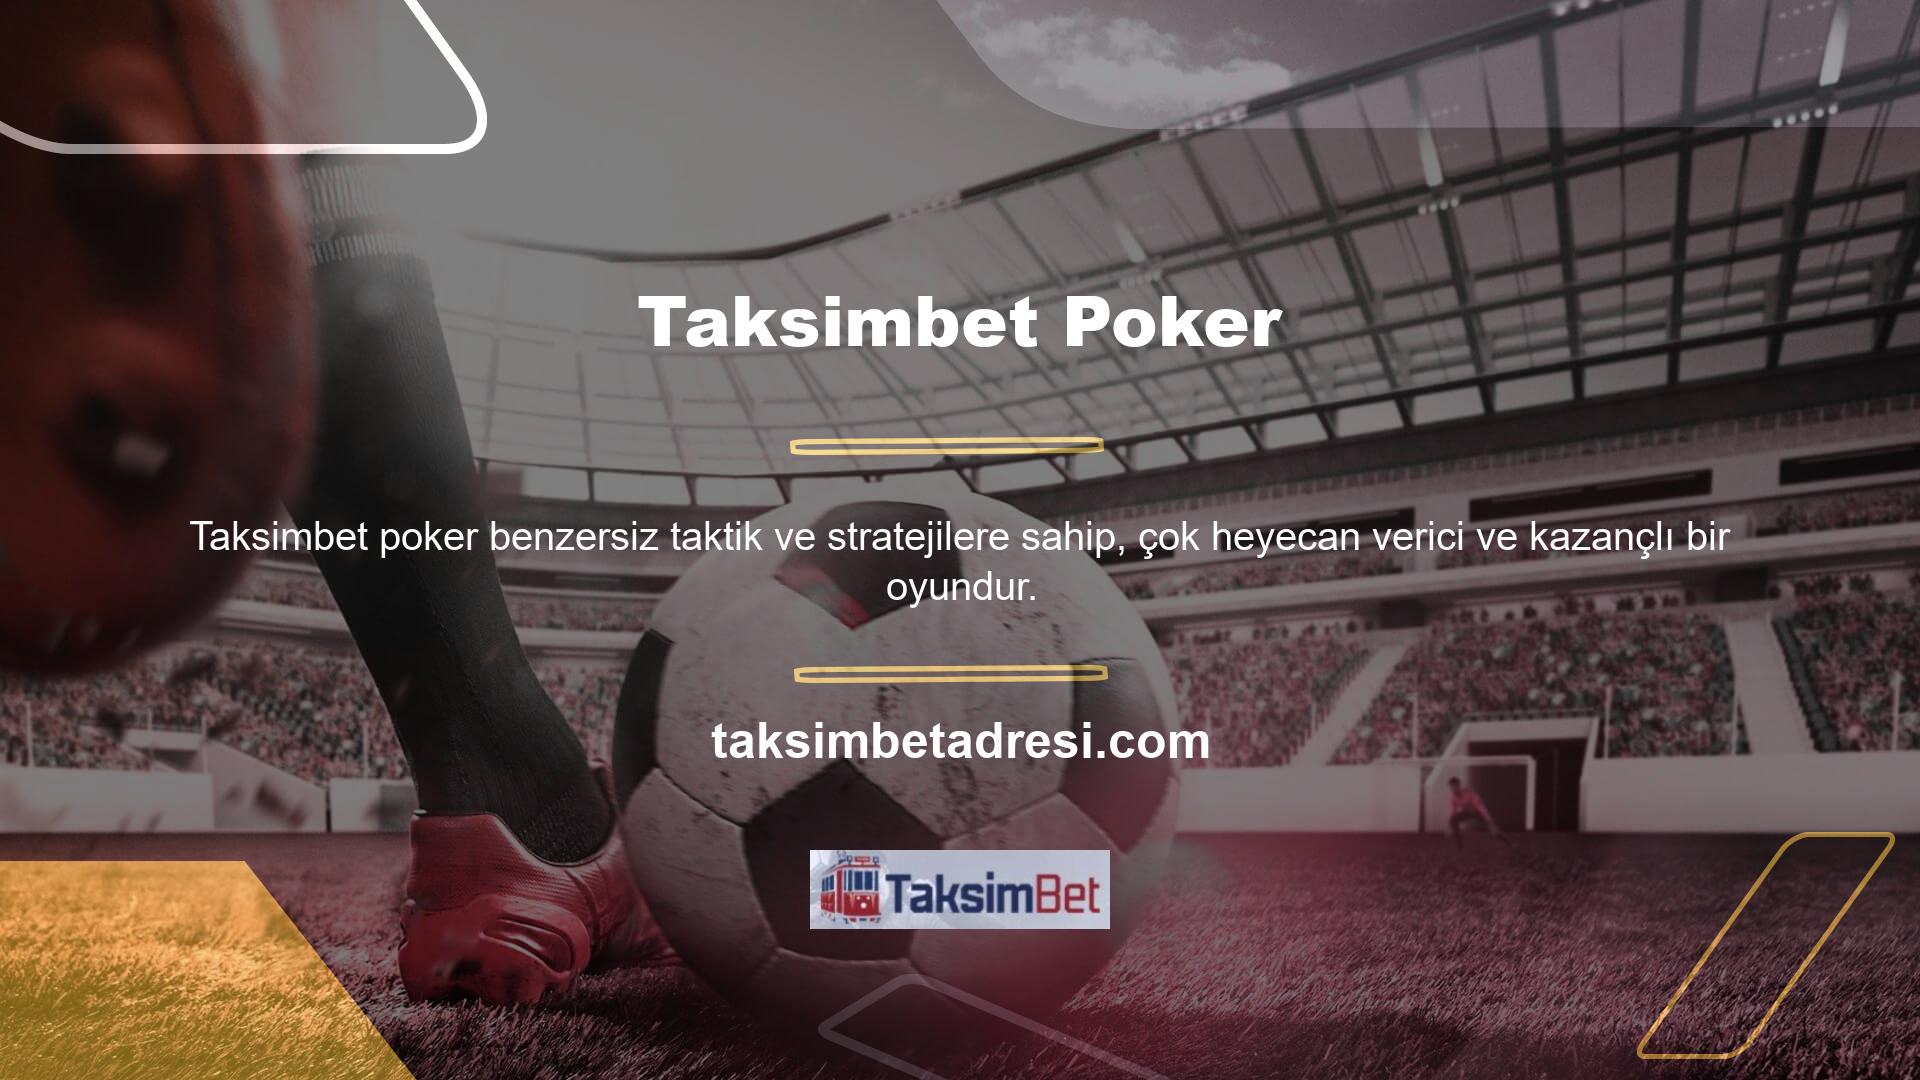 Hemen hemen tüm Türk casinoları ve bahis büroları poker oyunları sunmaktadır ancak Taksimbet Poker en kapsamlı ve ilgi çekici poker lobisidir